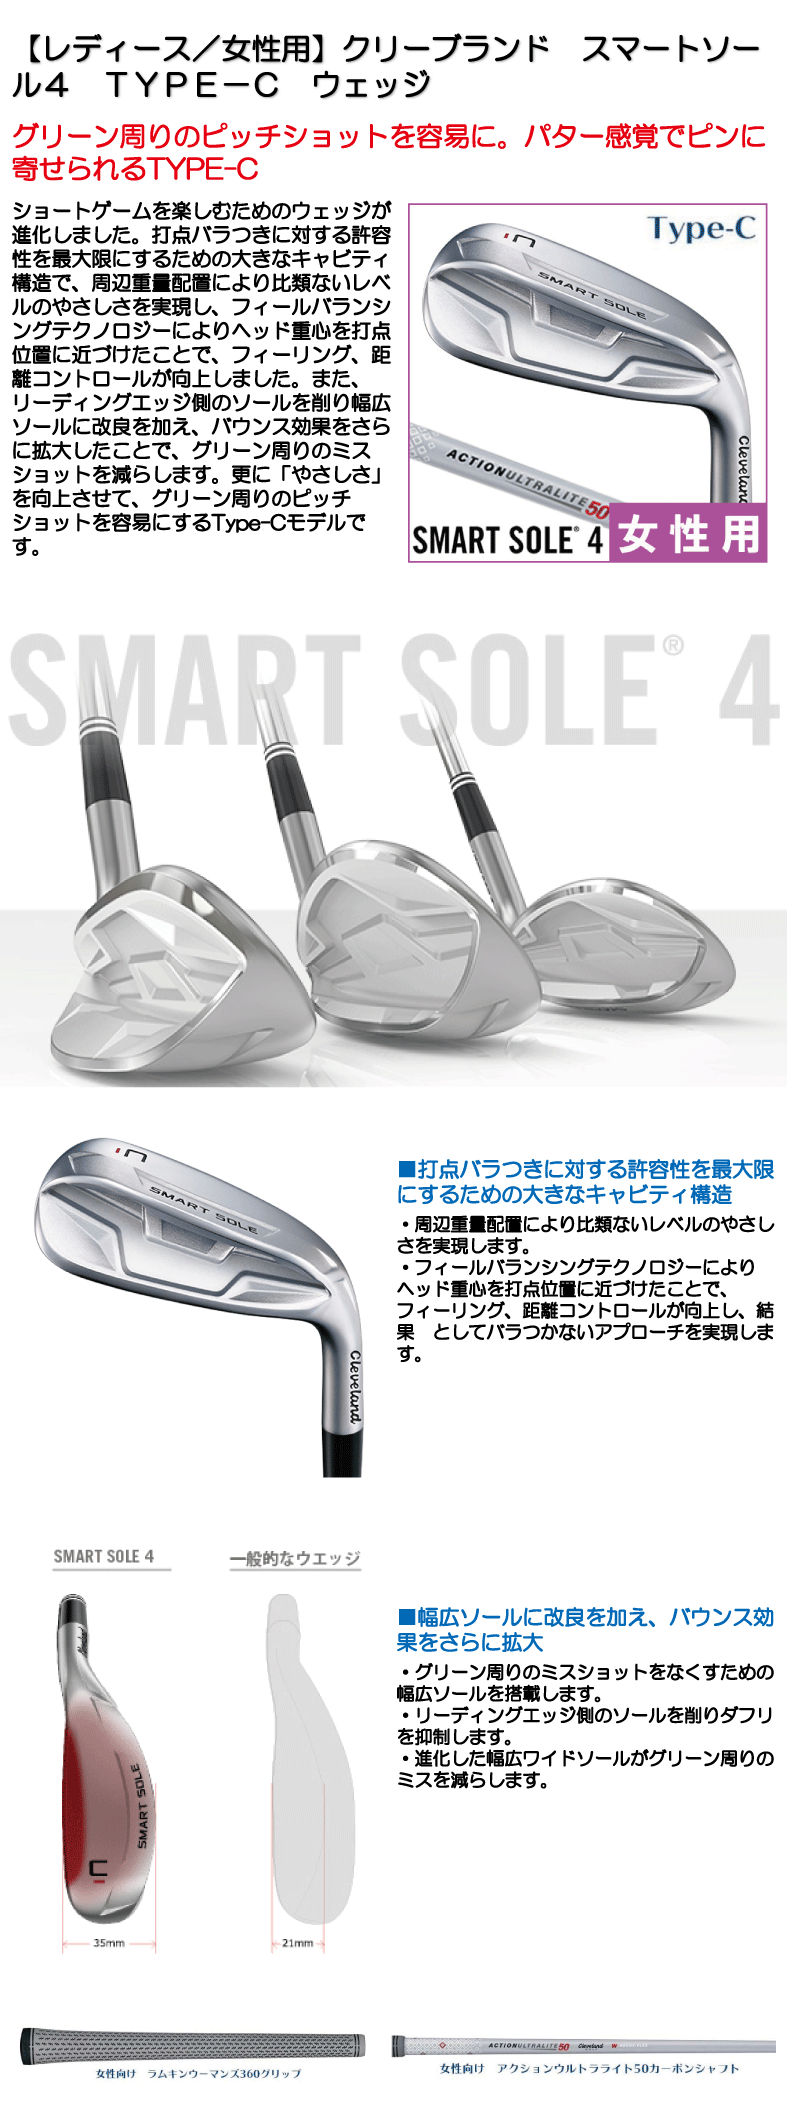 Cleveland GOLF クリーブランドゴルフ 日本正規品 SOLE4 レディスモデル アクションウルトラライト50カーボンシャフト SMART  スマートソール4